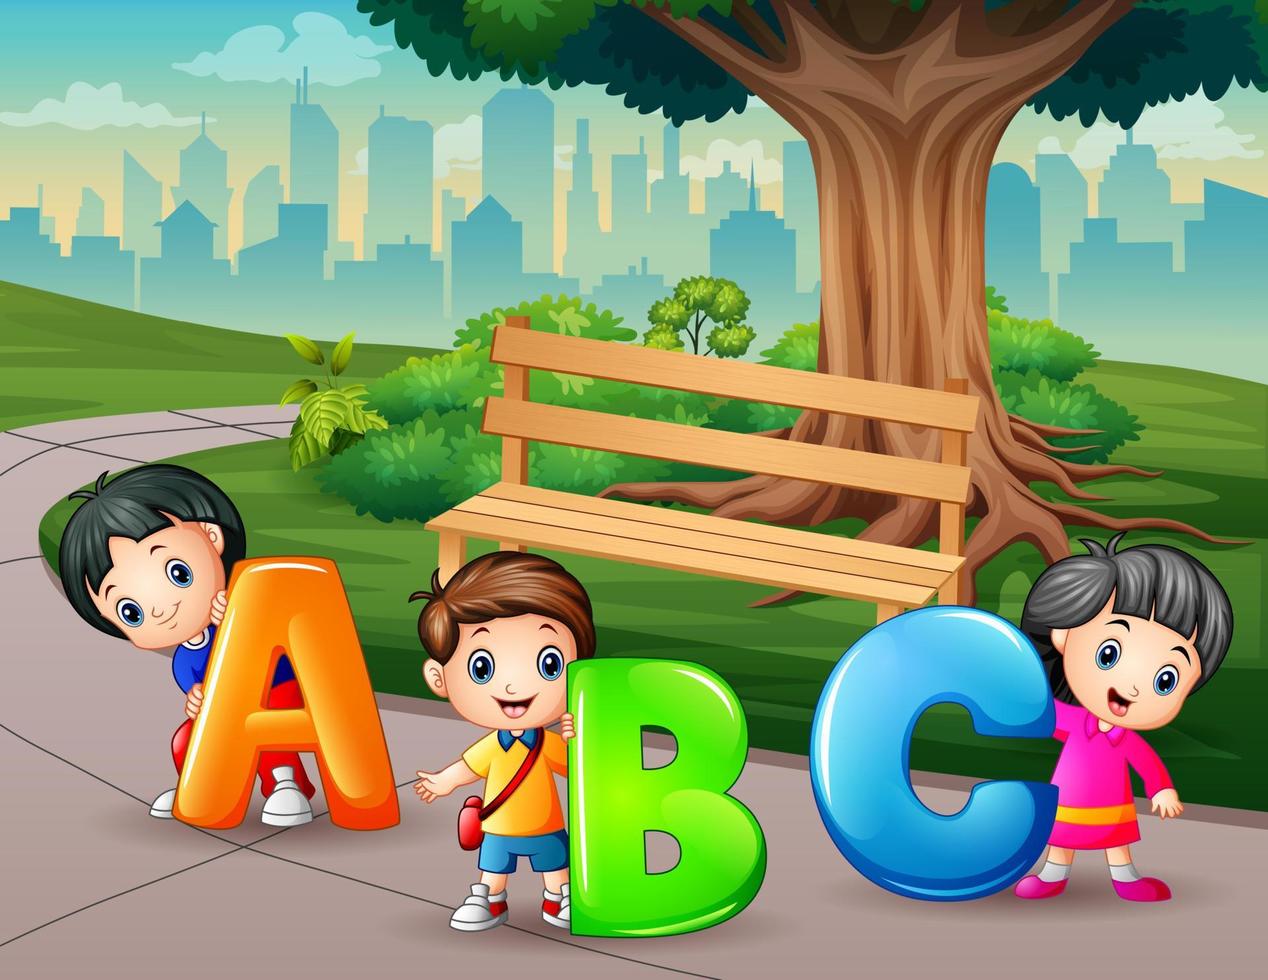 bambini felici che trasportano le lettere abc nell'illustrazione del giardino vettore